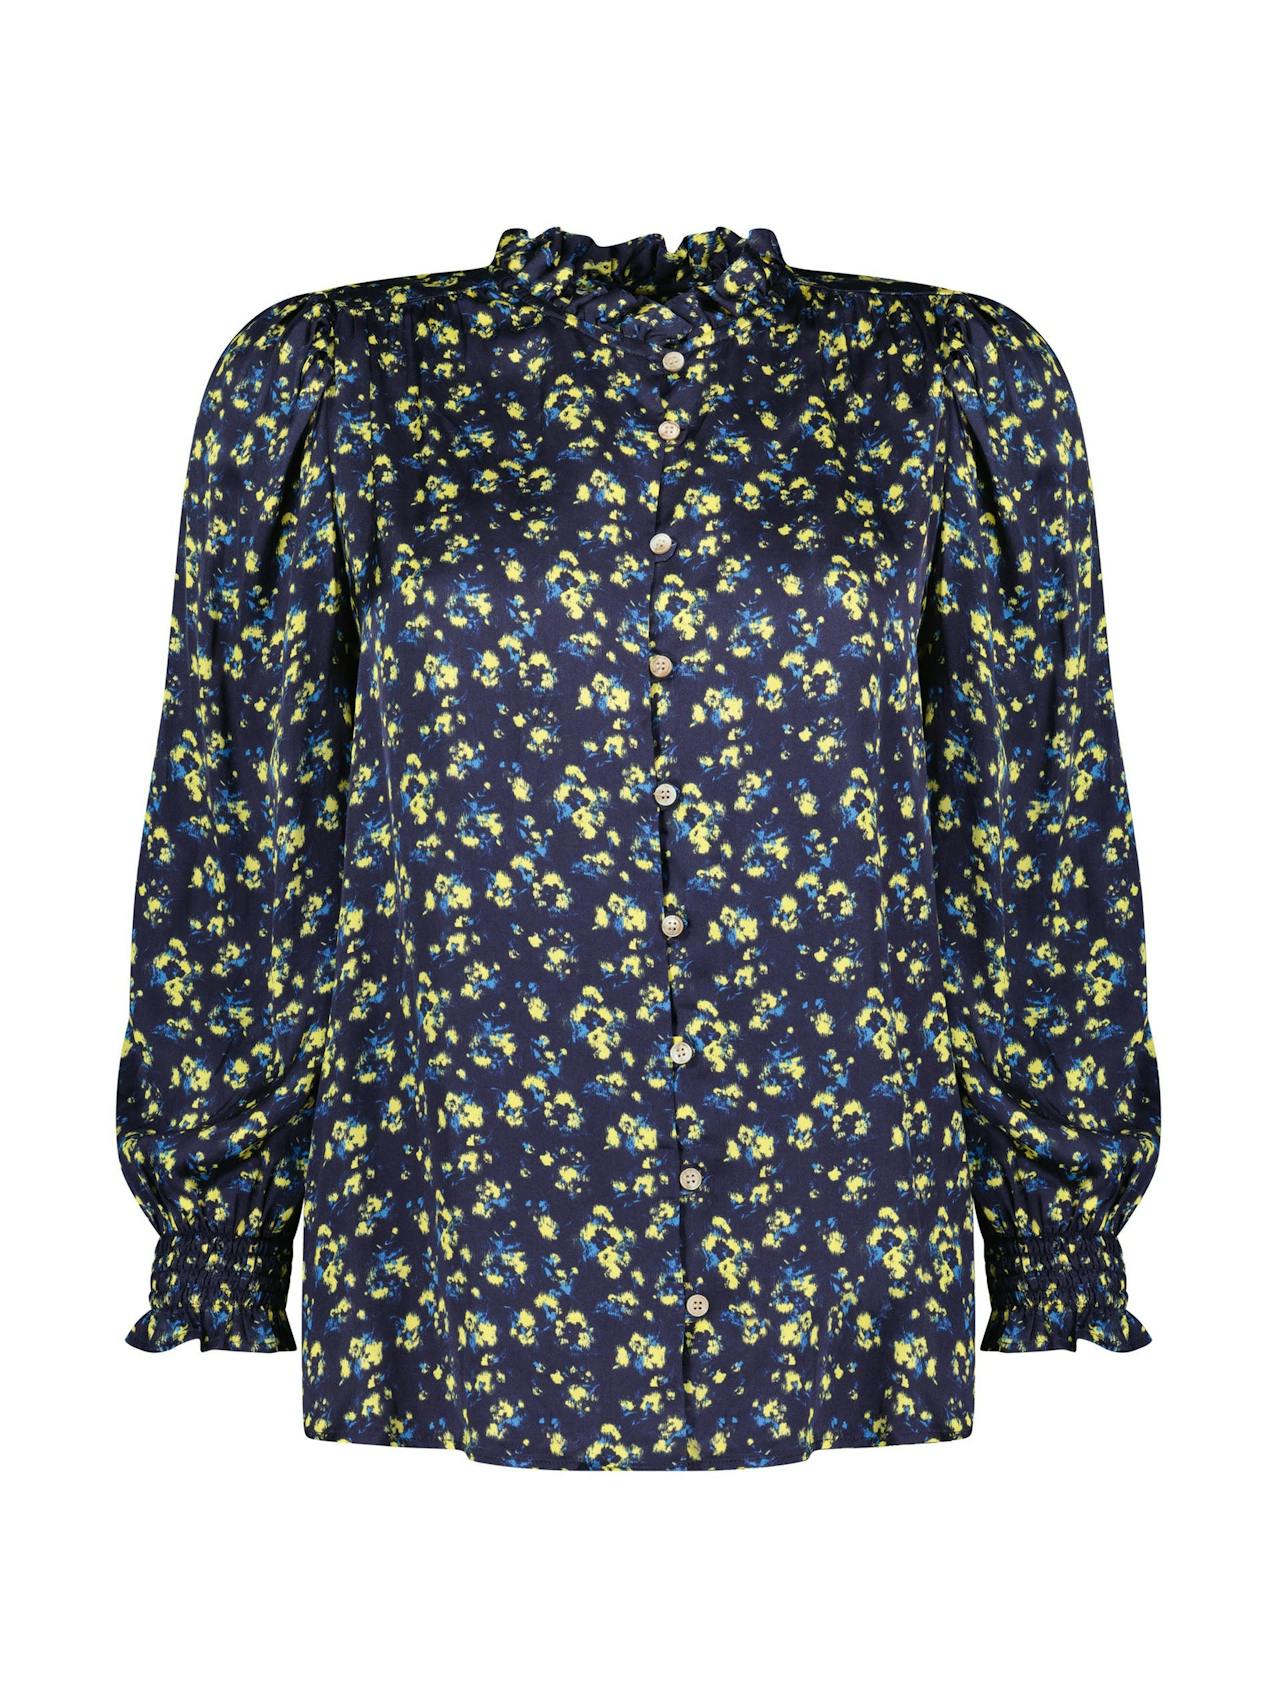 Melie floral blouse